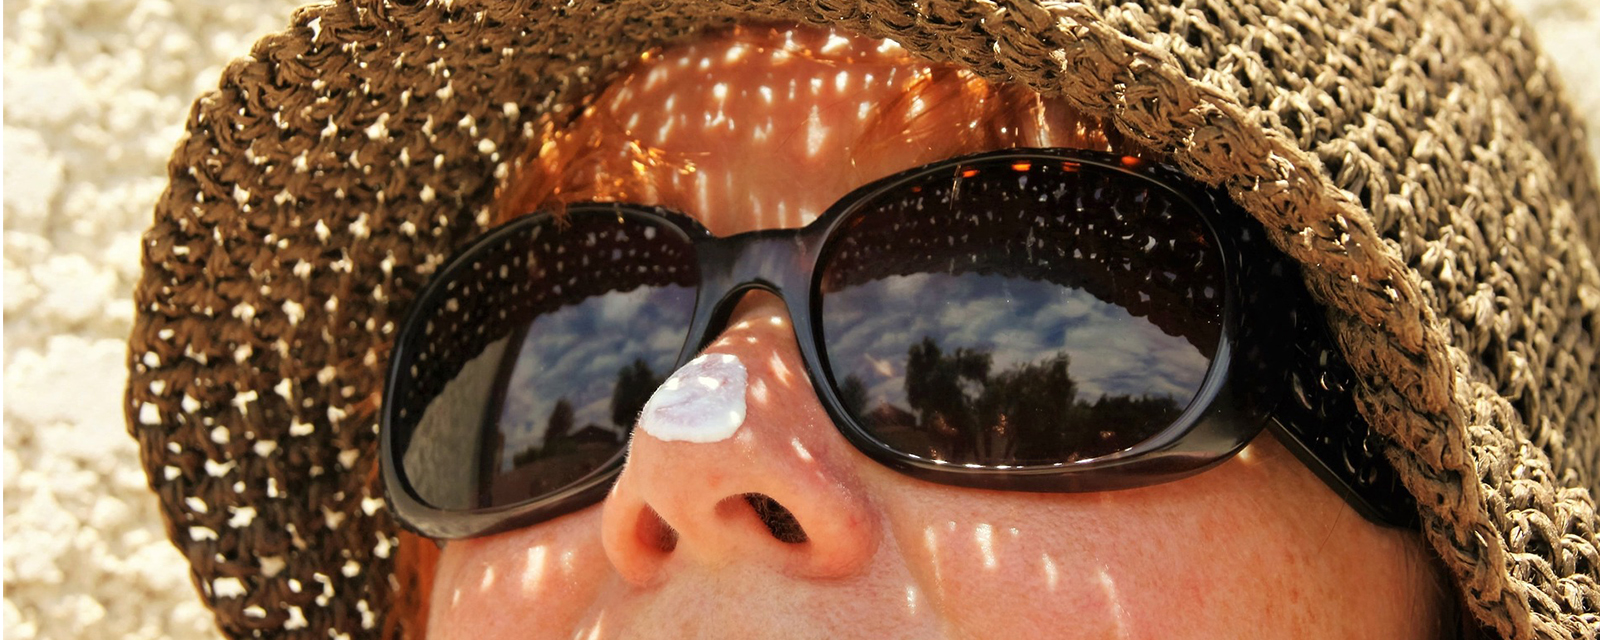 Sujetbild Dame mit Sonnenbrille und Hut